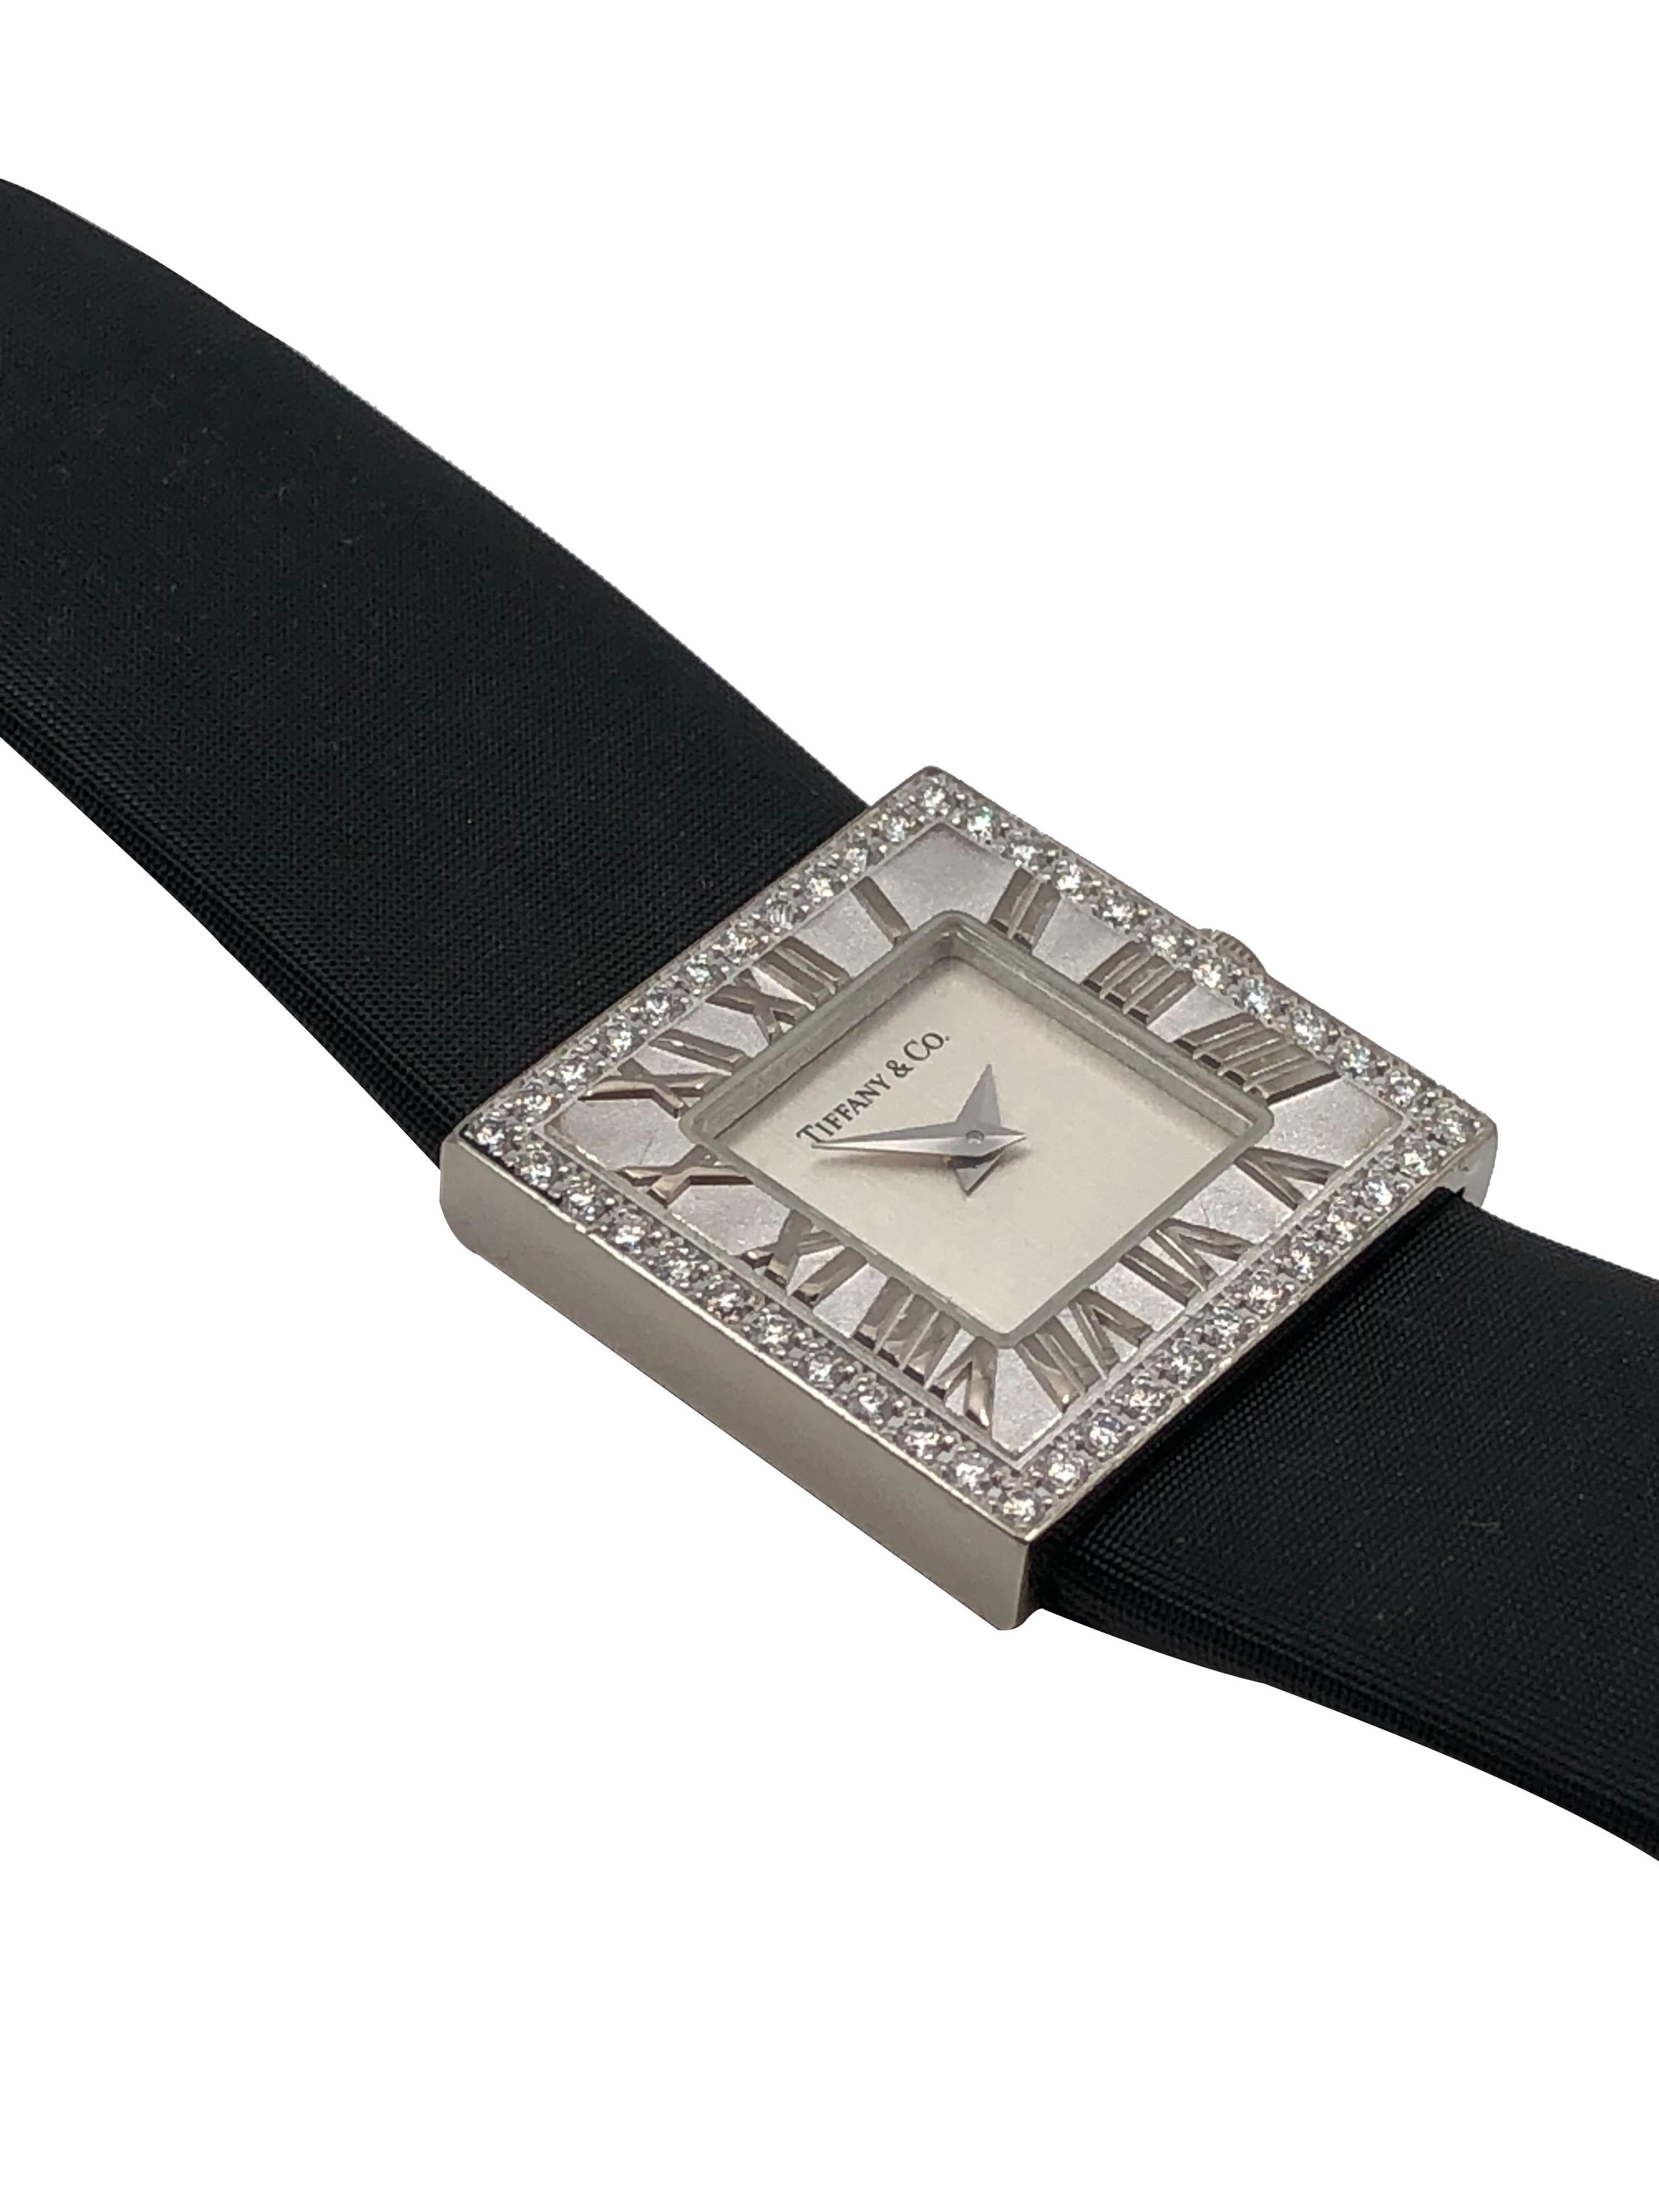 CIRCA 2005 Tiffany & Company 18K White Gold Atlas Collection Wrist Watch, 21 X 21 MM wasserdichtes Gehäuse, Quarzwerk. Versilbertes Zifferblatt. Erhöhte römische Ziffern innere Lünette und äußere Lünette von runden Diamanten im Brillantschliff von